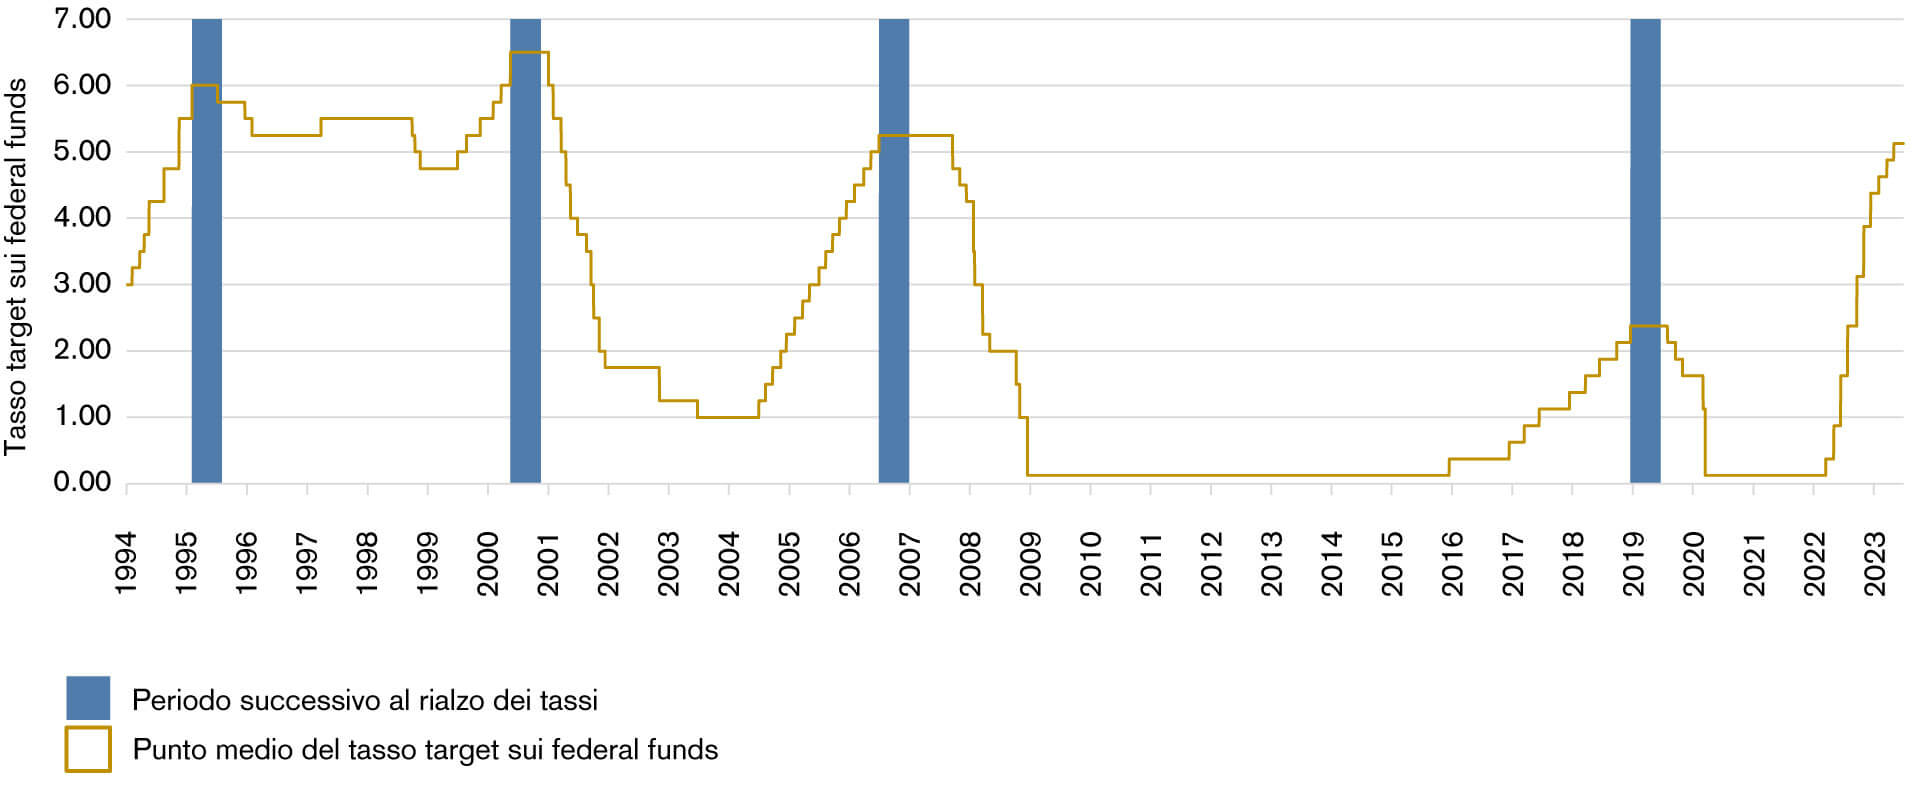 Grafico 1: Andamento del tasso target sui federal funds (punto medio) e periodo successivo al giorno dell’ultimo rialzo. 